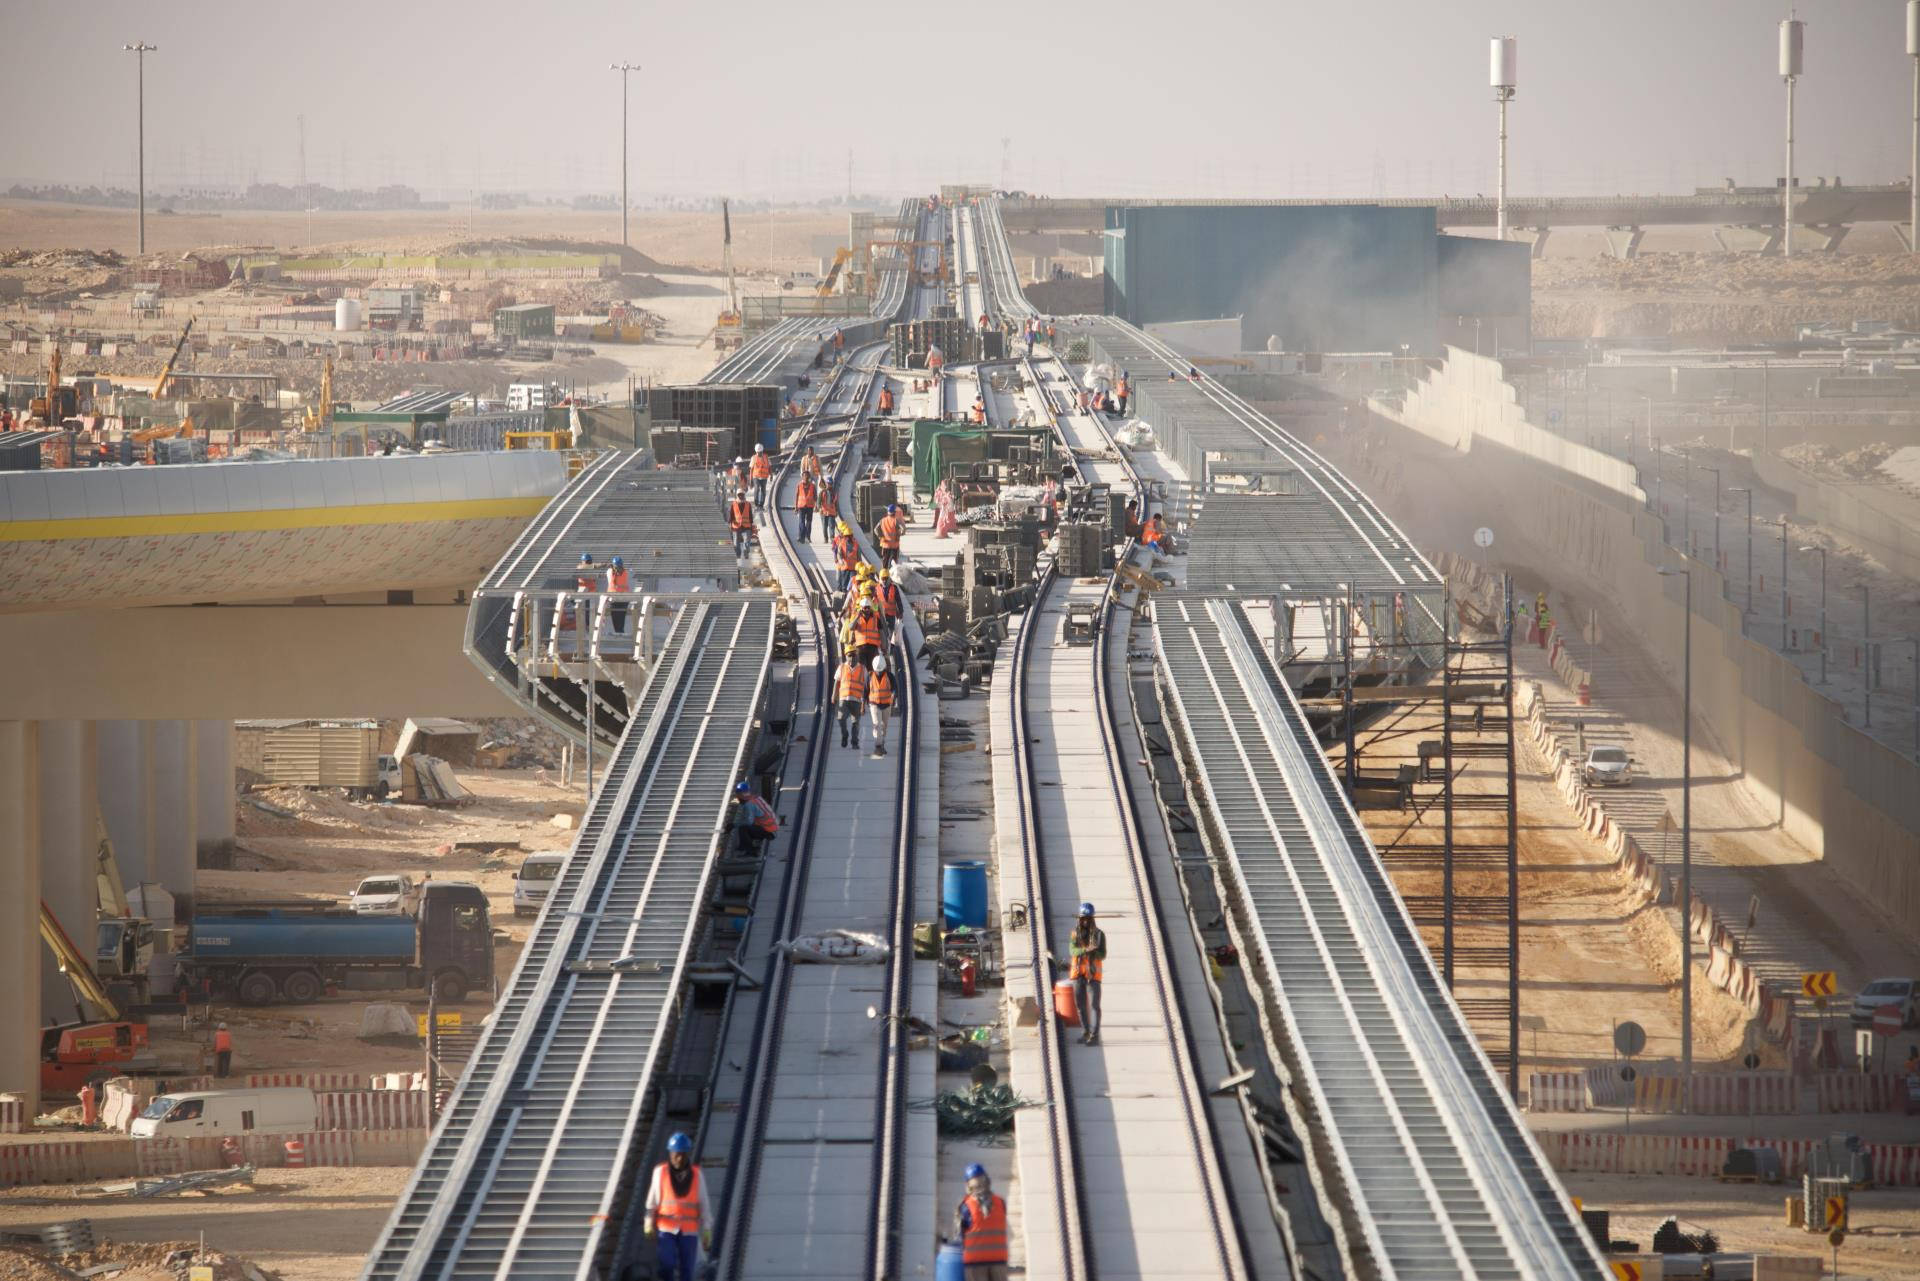 Railways On Progress In Riyadh Background